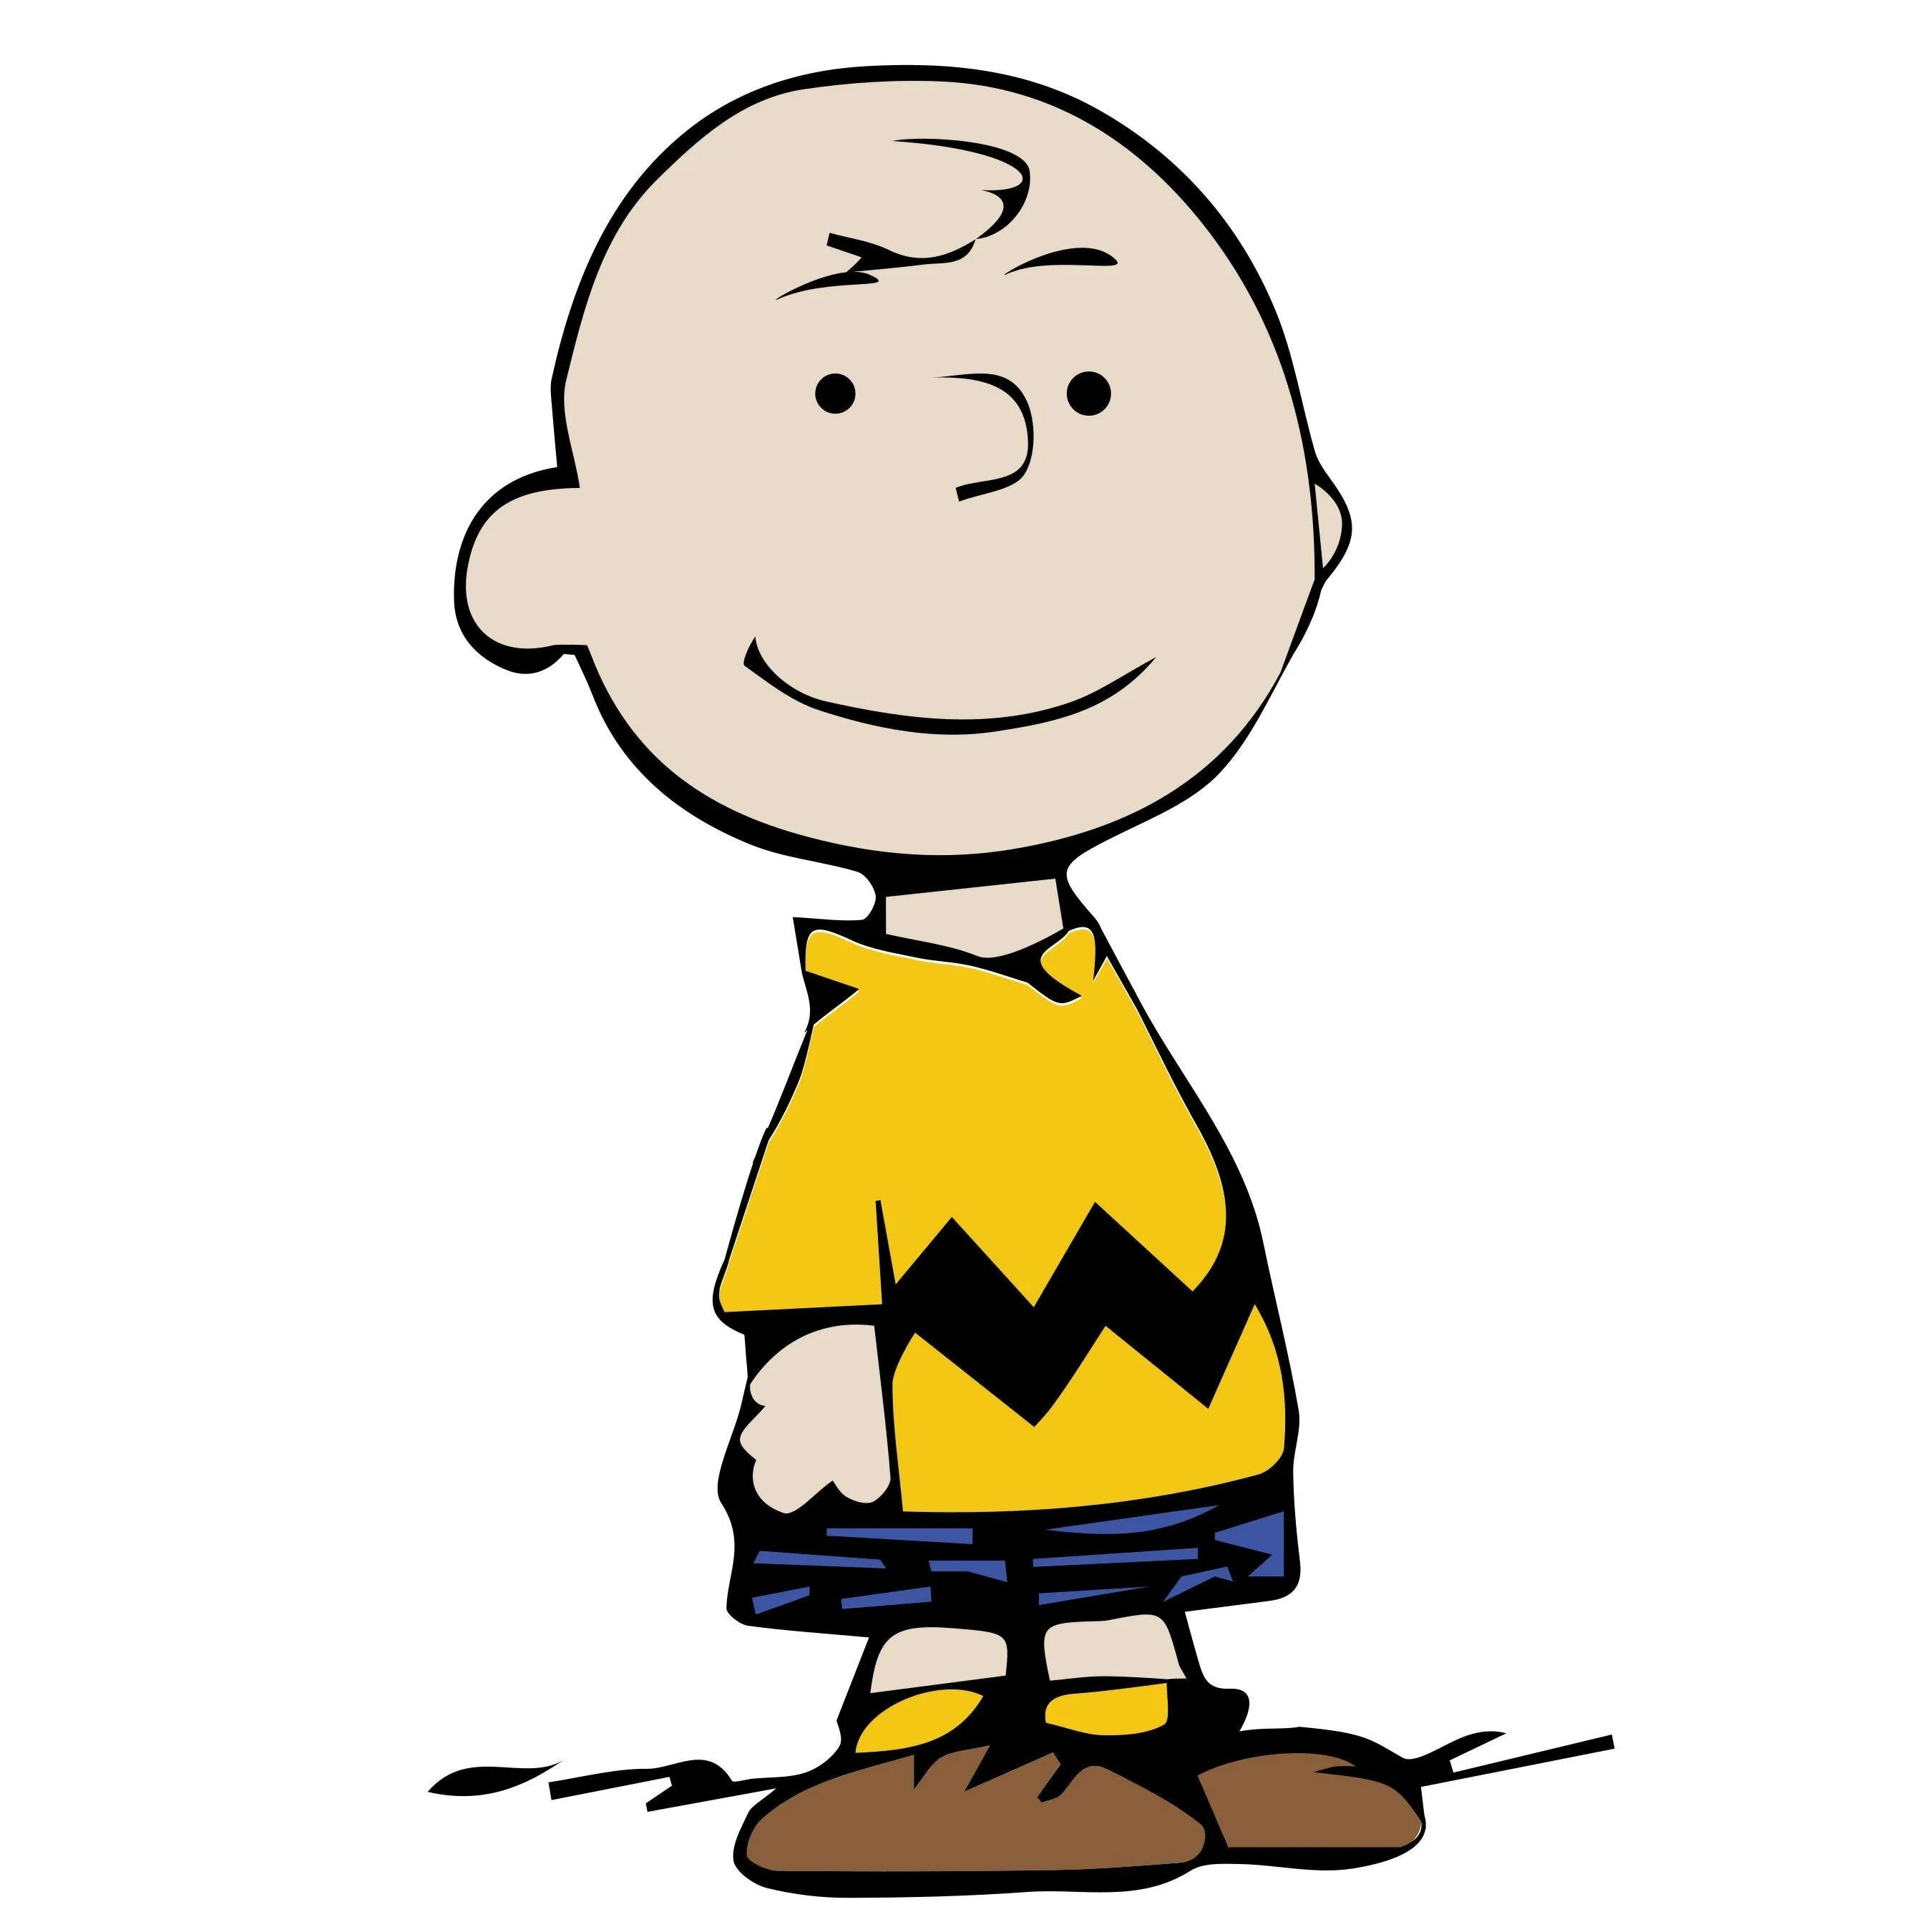 Charlie brown. Чарли Браун. Снупи и Чарли Браун. Чарли Браун персонажи. Чарли Браун картинки.